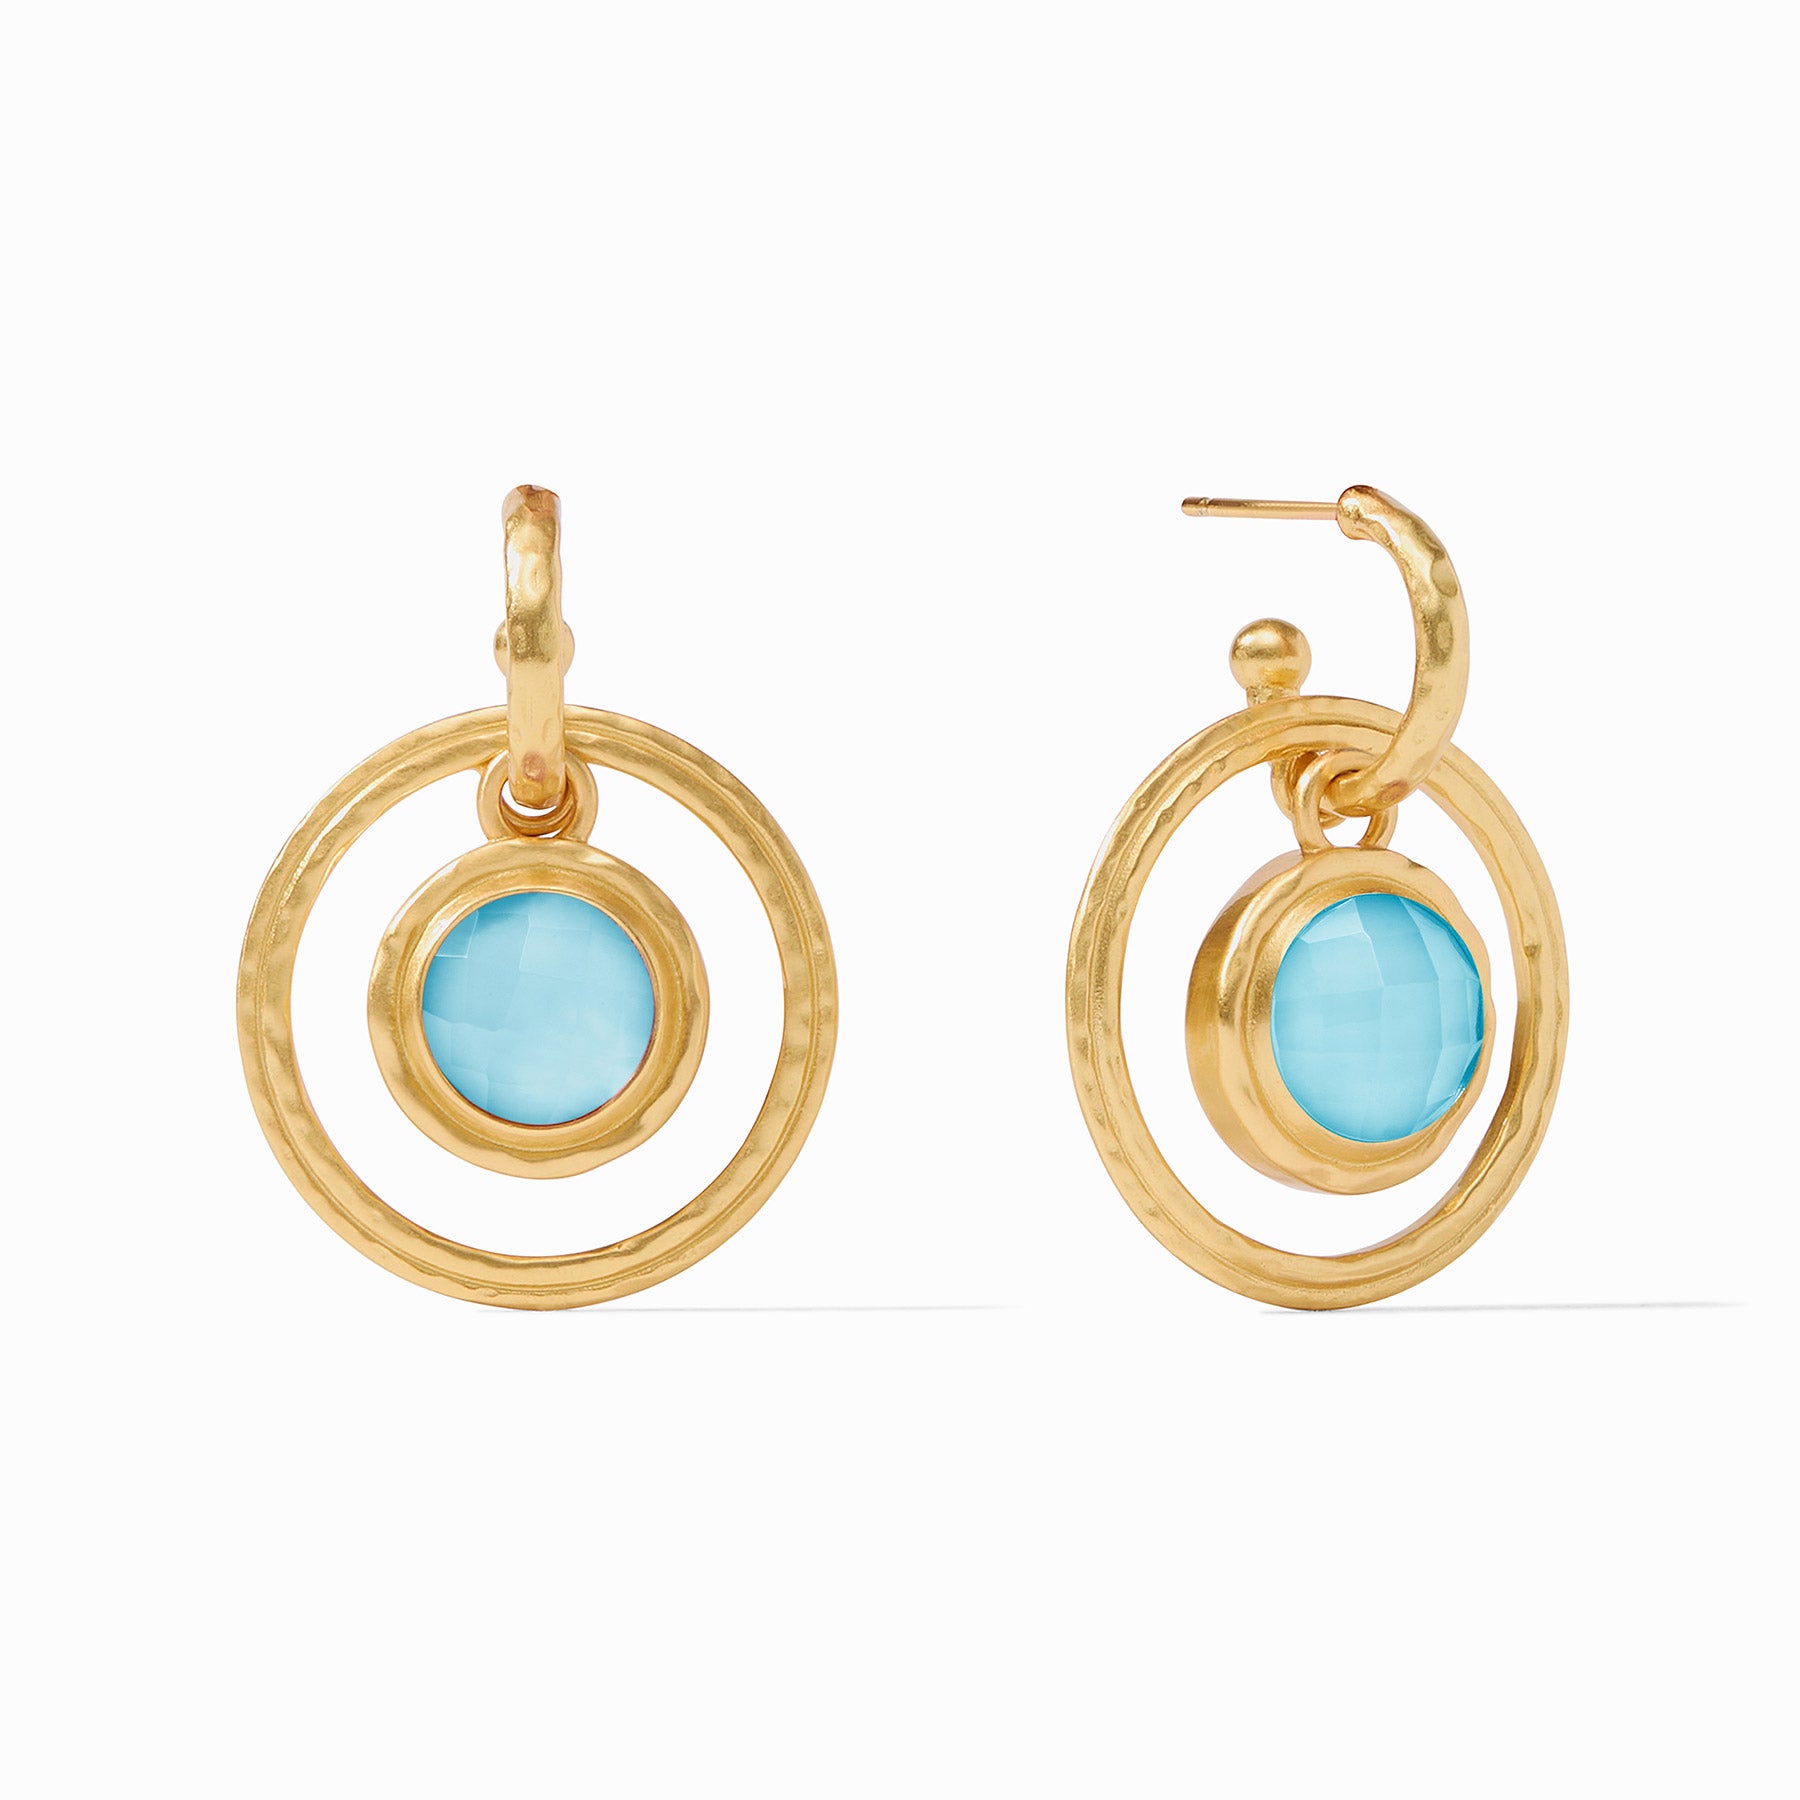 Julie Vos - Astor 6-in-1 Charm Earring, Iridescent Capri Blue